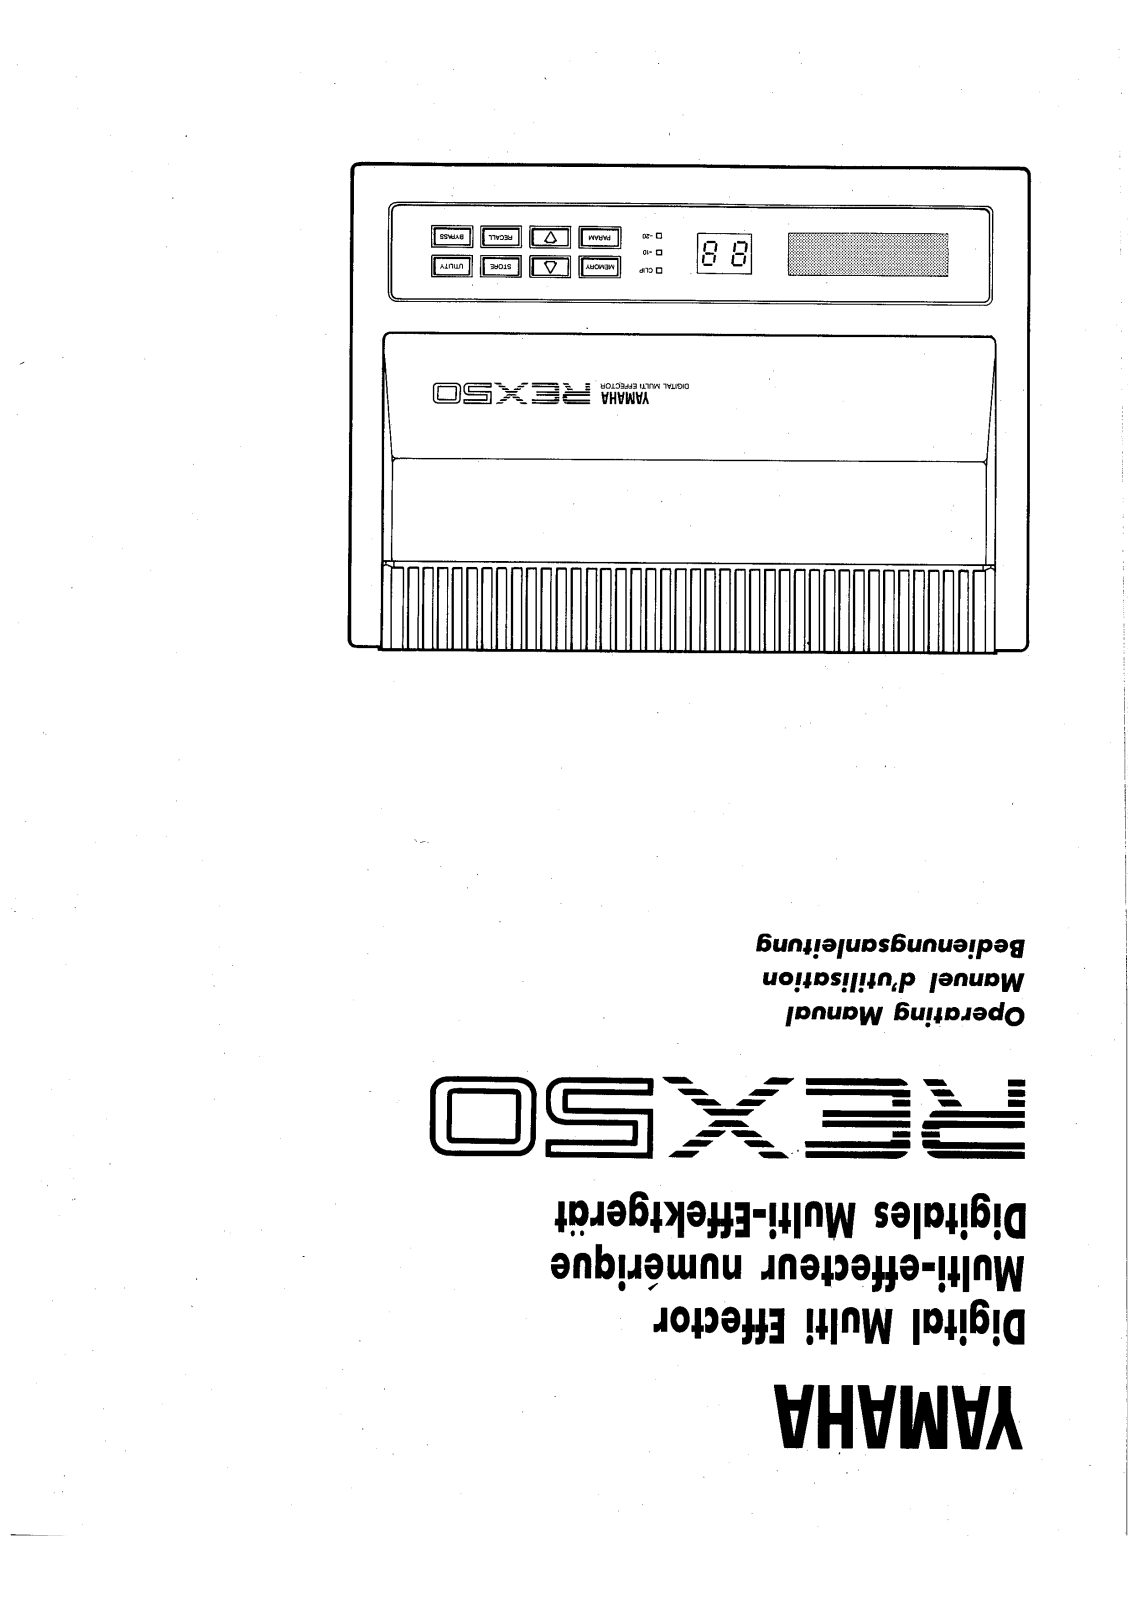 Yamaha Audio REX50 User Manual